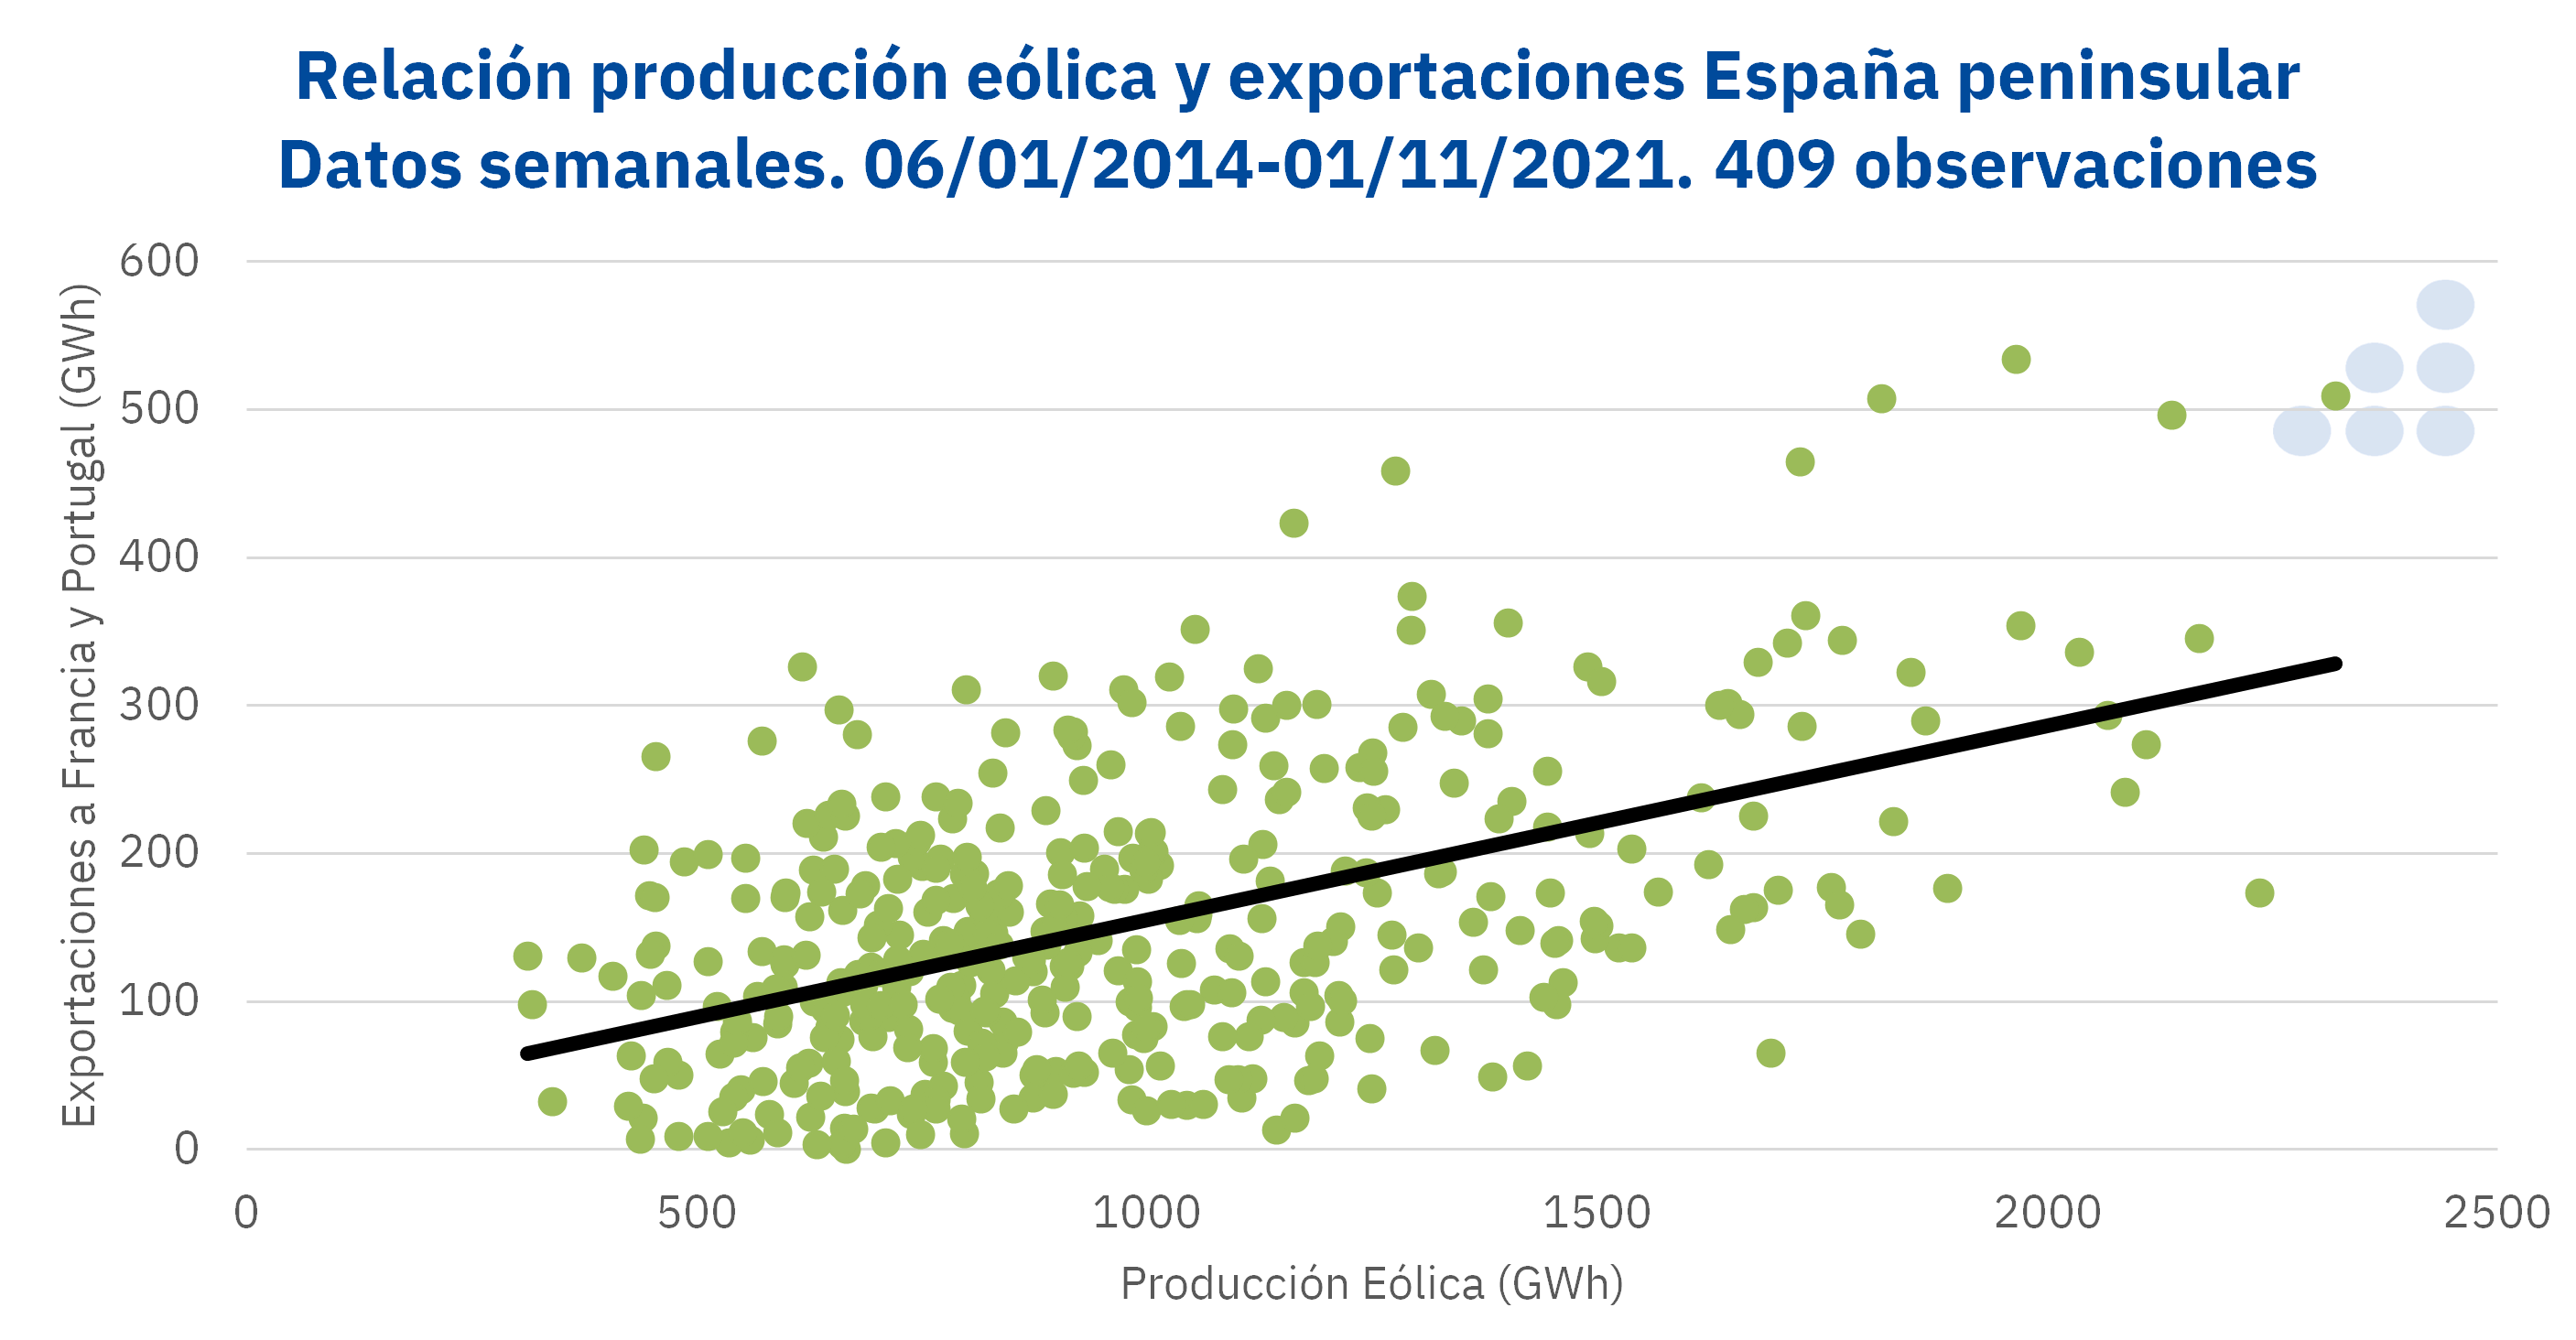 AleaSoft - Relacion produccion eolica exportaciones espanna peninsular semanal